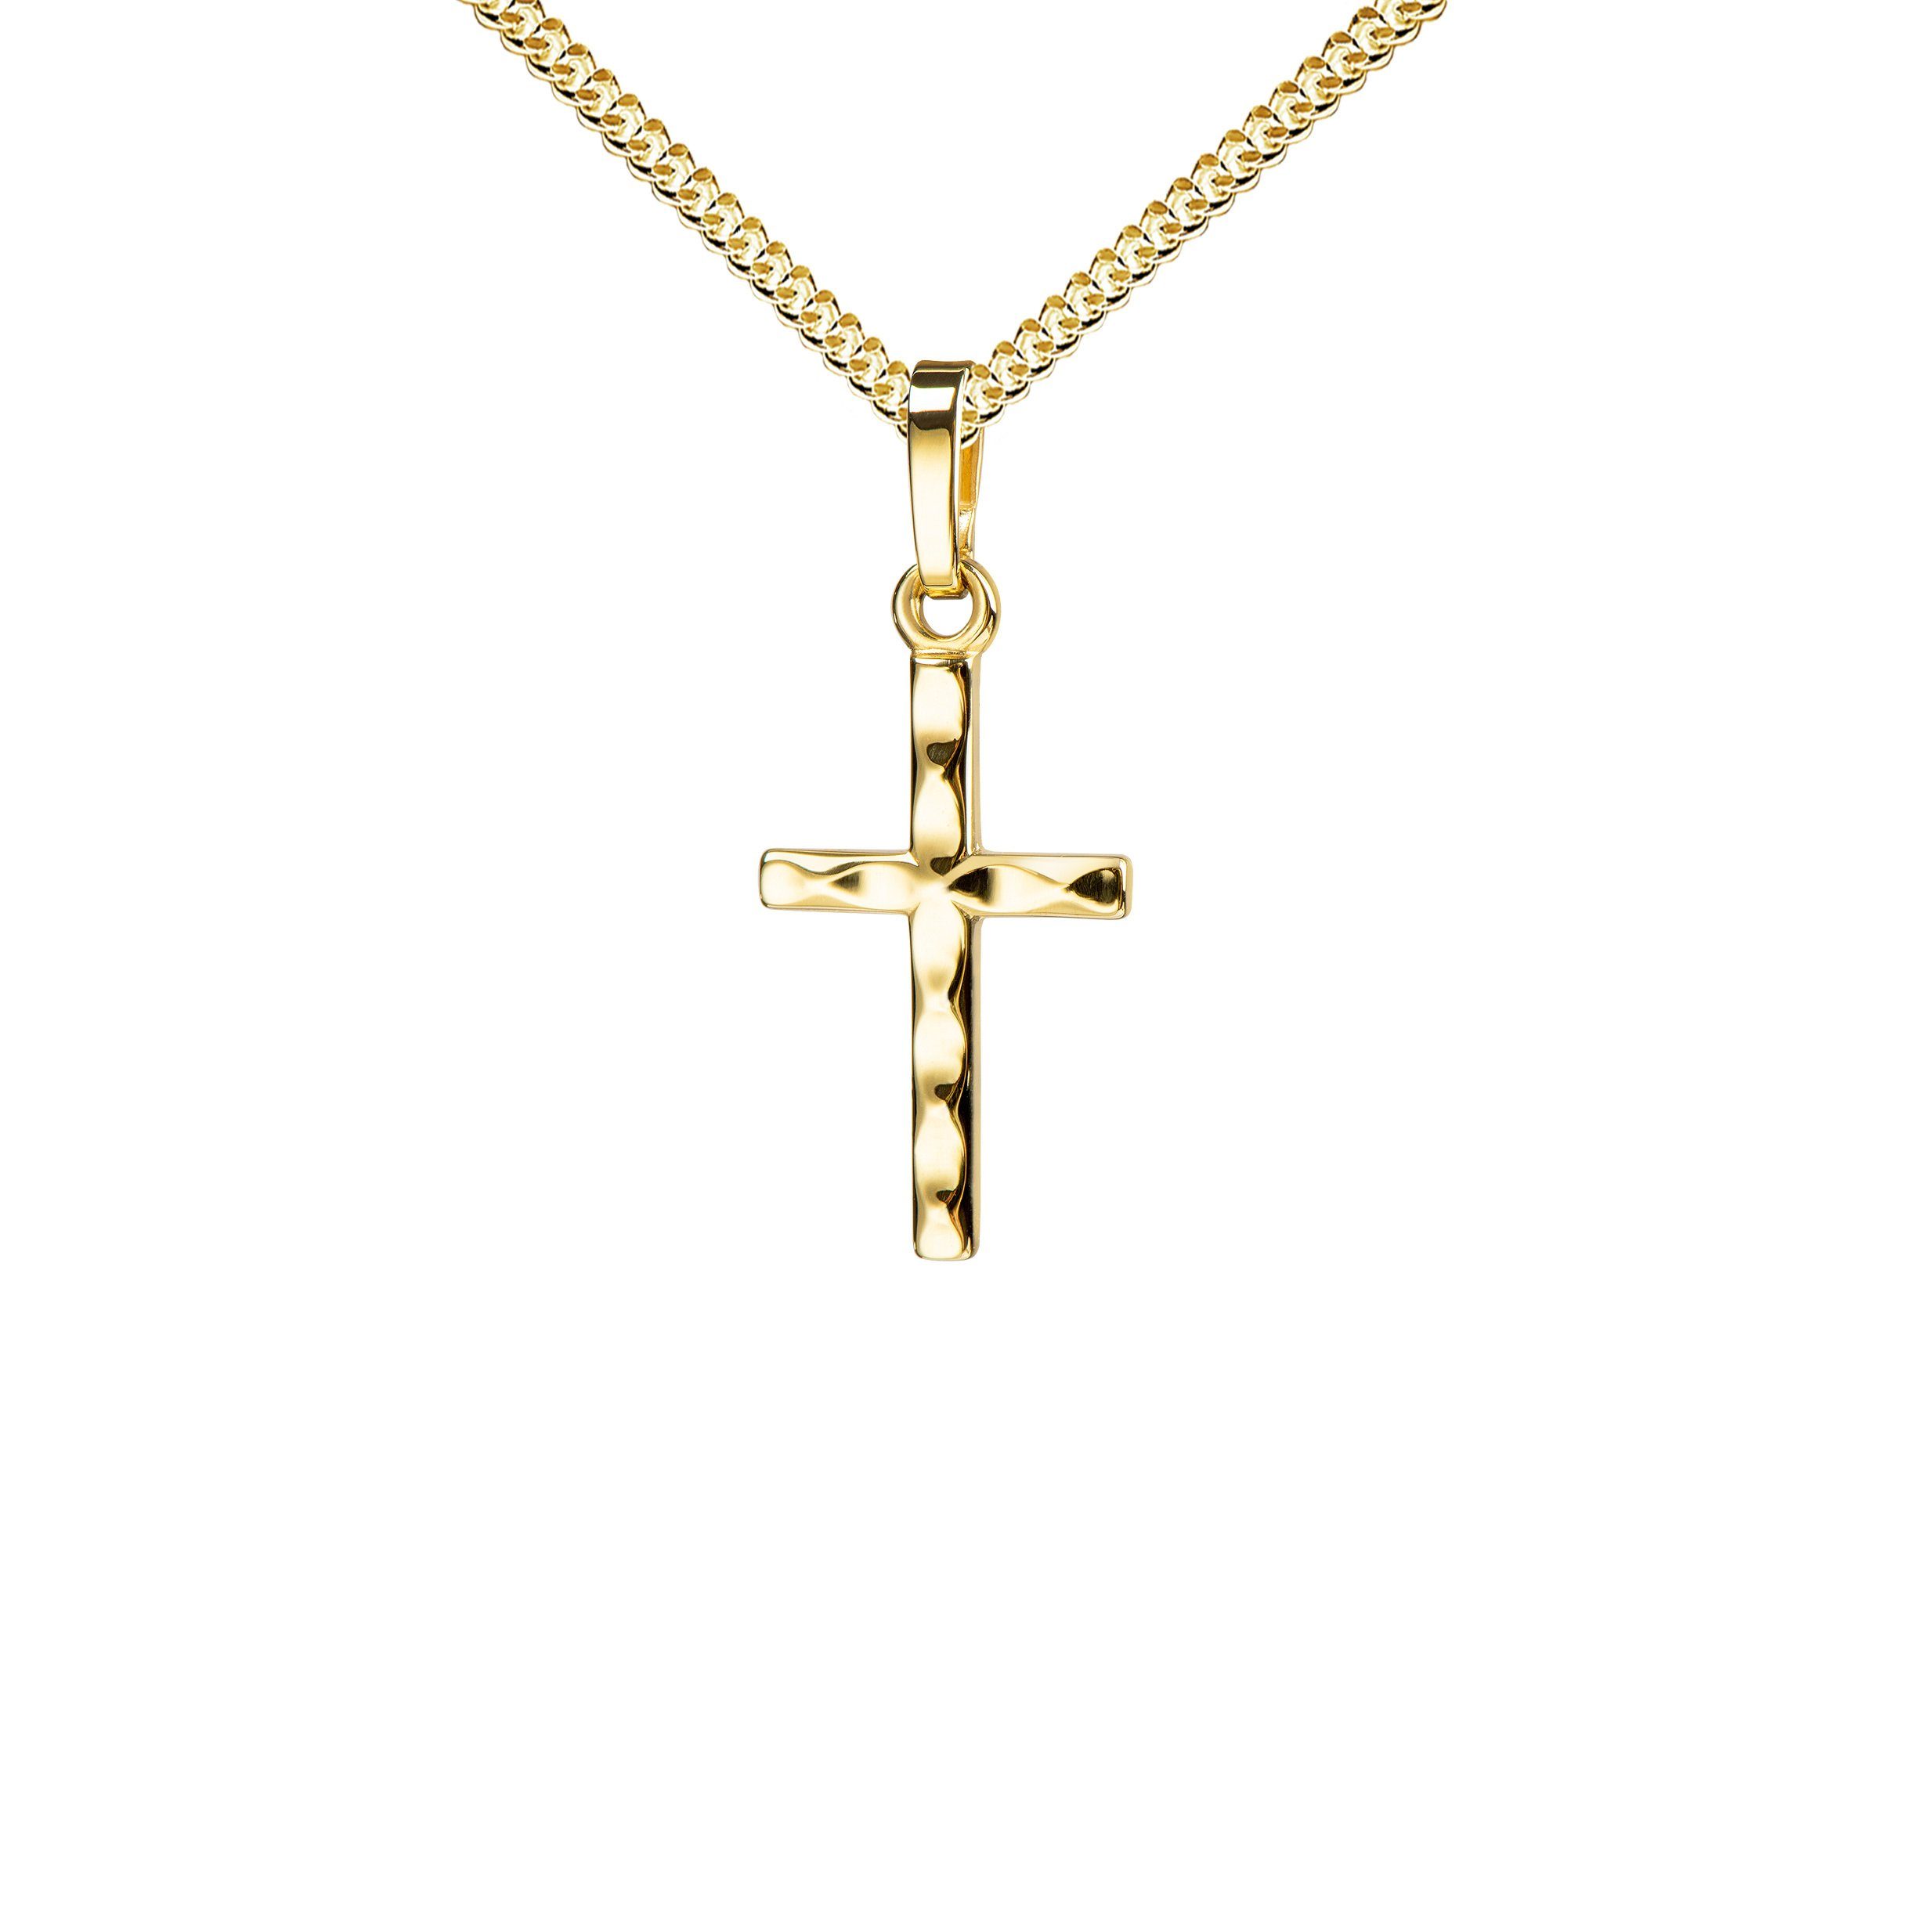 JEVELION Kreuzkette Kreuzanhänger 585 Gold - Made in Germany (Goldkreuz,  für Damen und Herren), Mit Kette vergoldet- Länge wählbar 36 - 70 cm oder  ohne Kette.